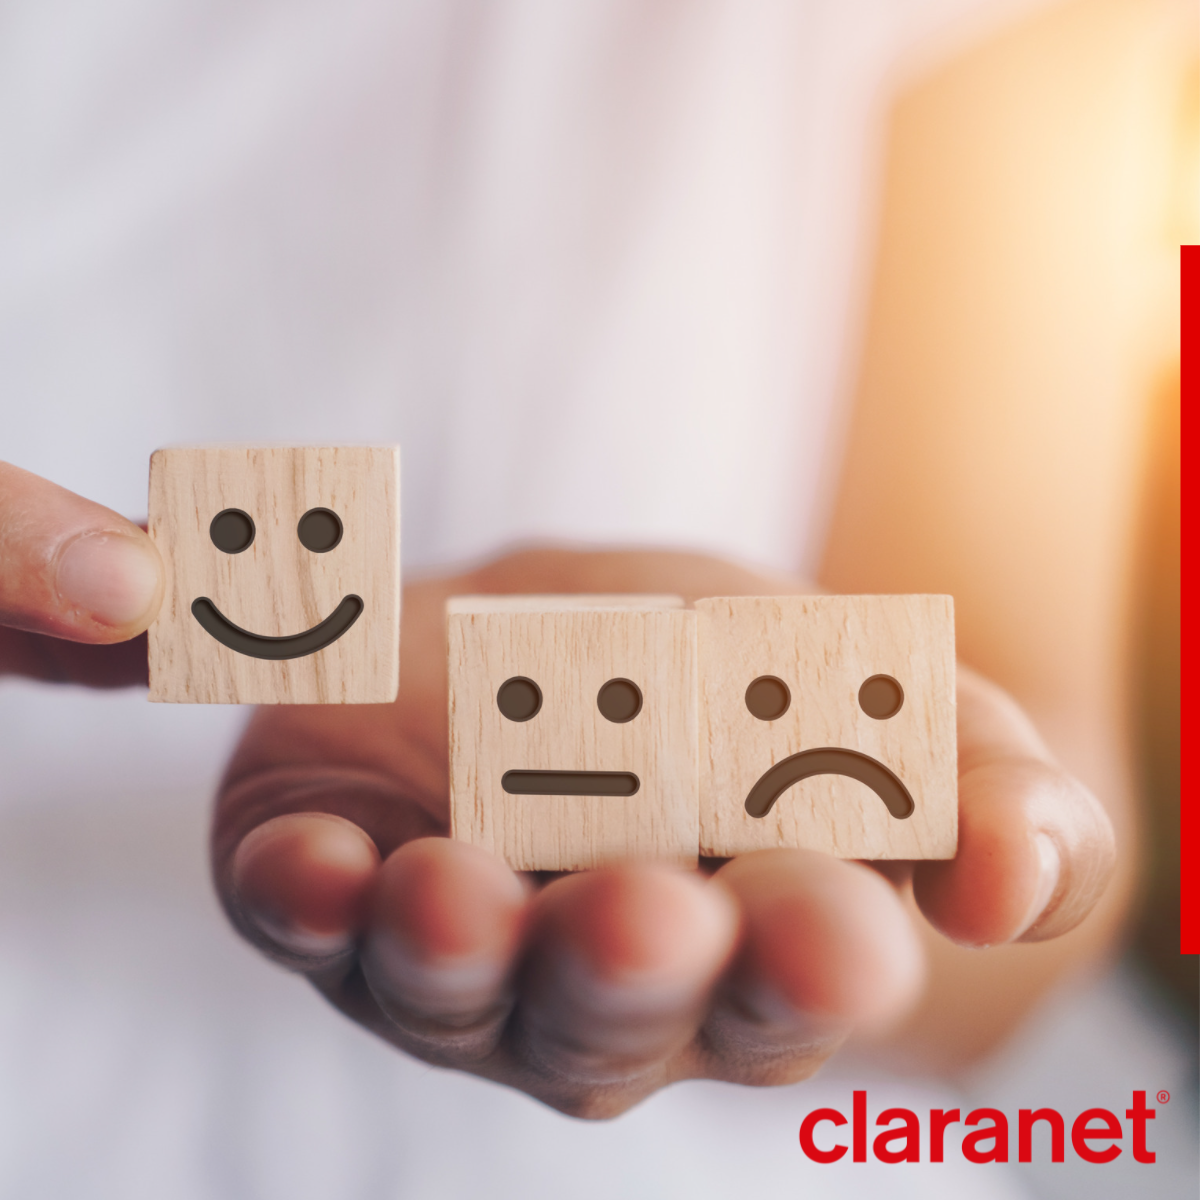 Claranet - Customer Feedback